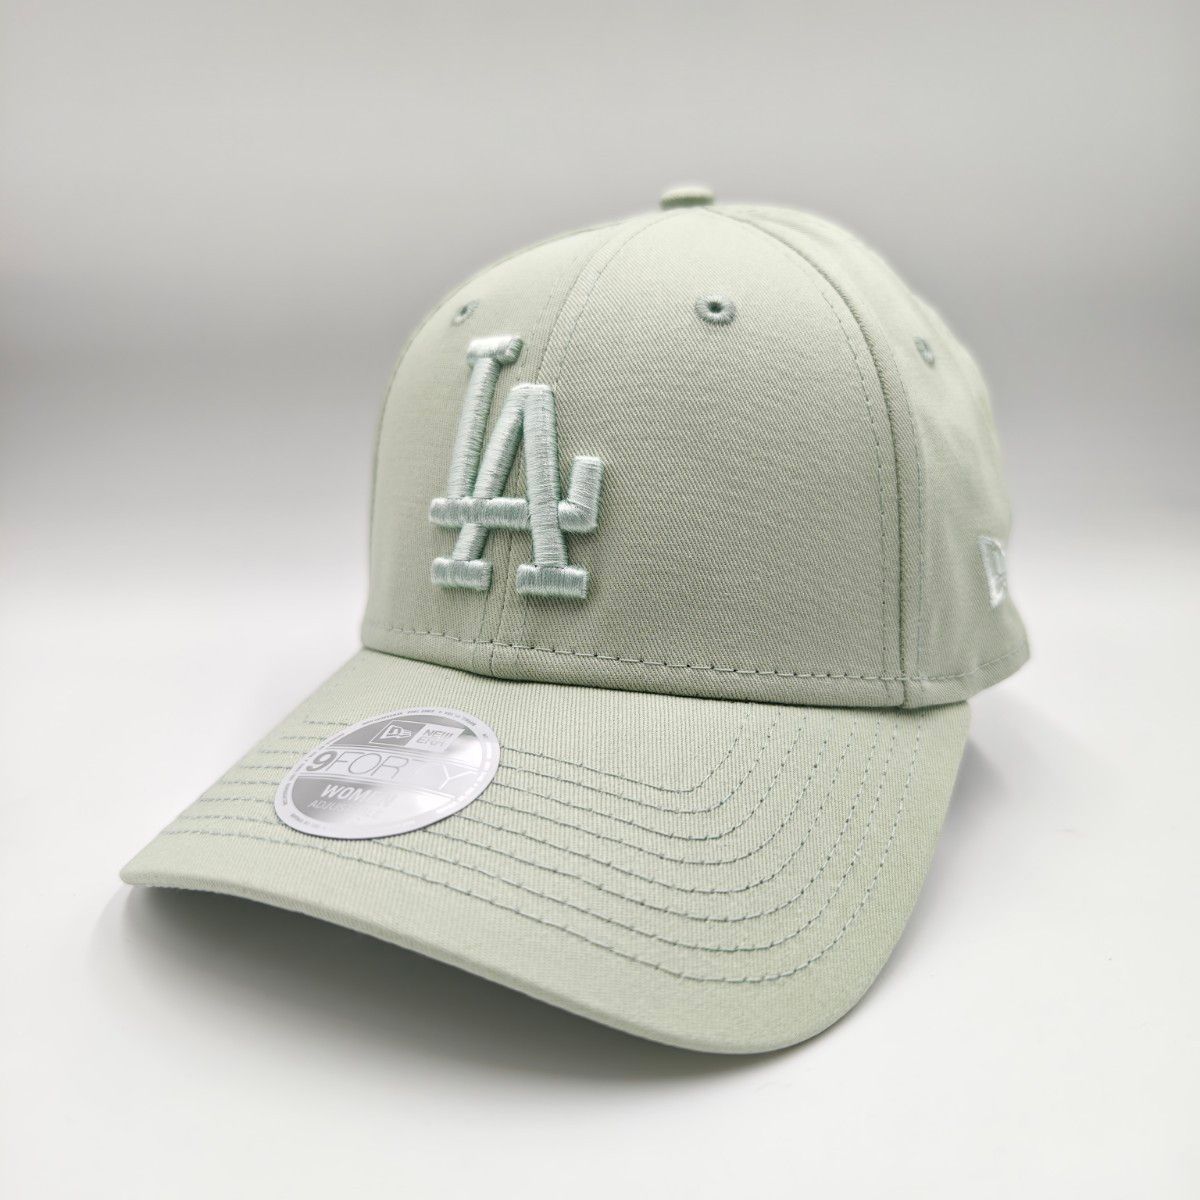 ニューエラ 9FORTY LA ロゴ キャップ 【ライトグリーン】ライムグリーン MLB NEW ERA 帽子 ドジャース 